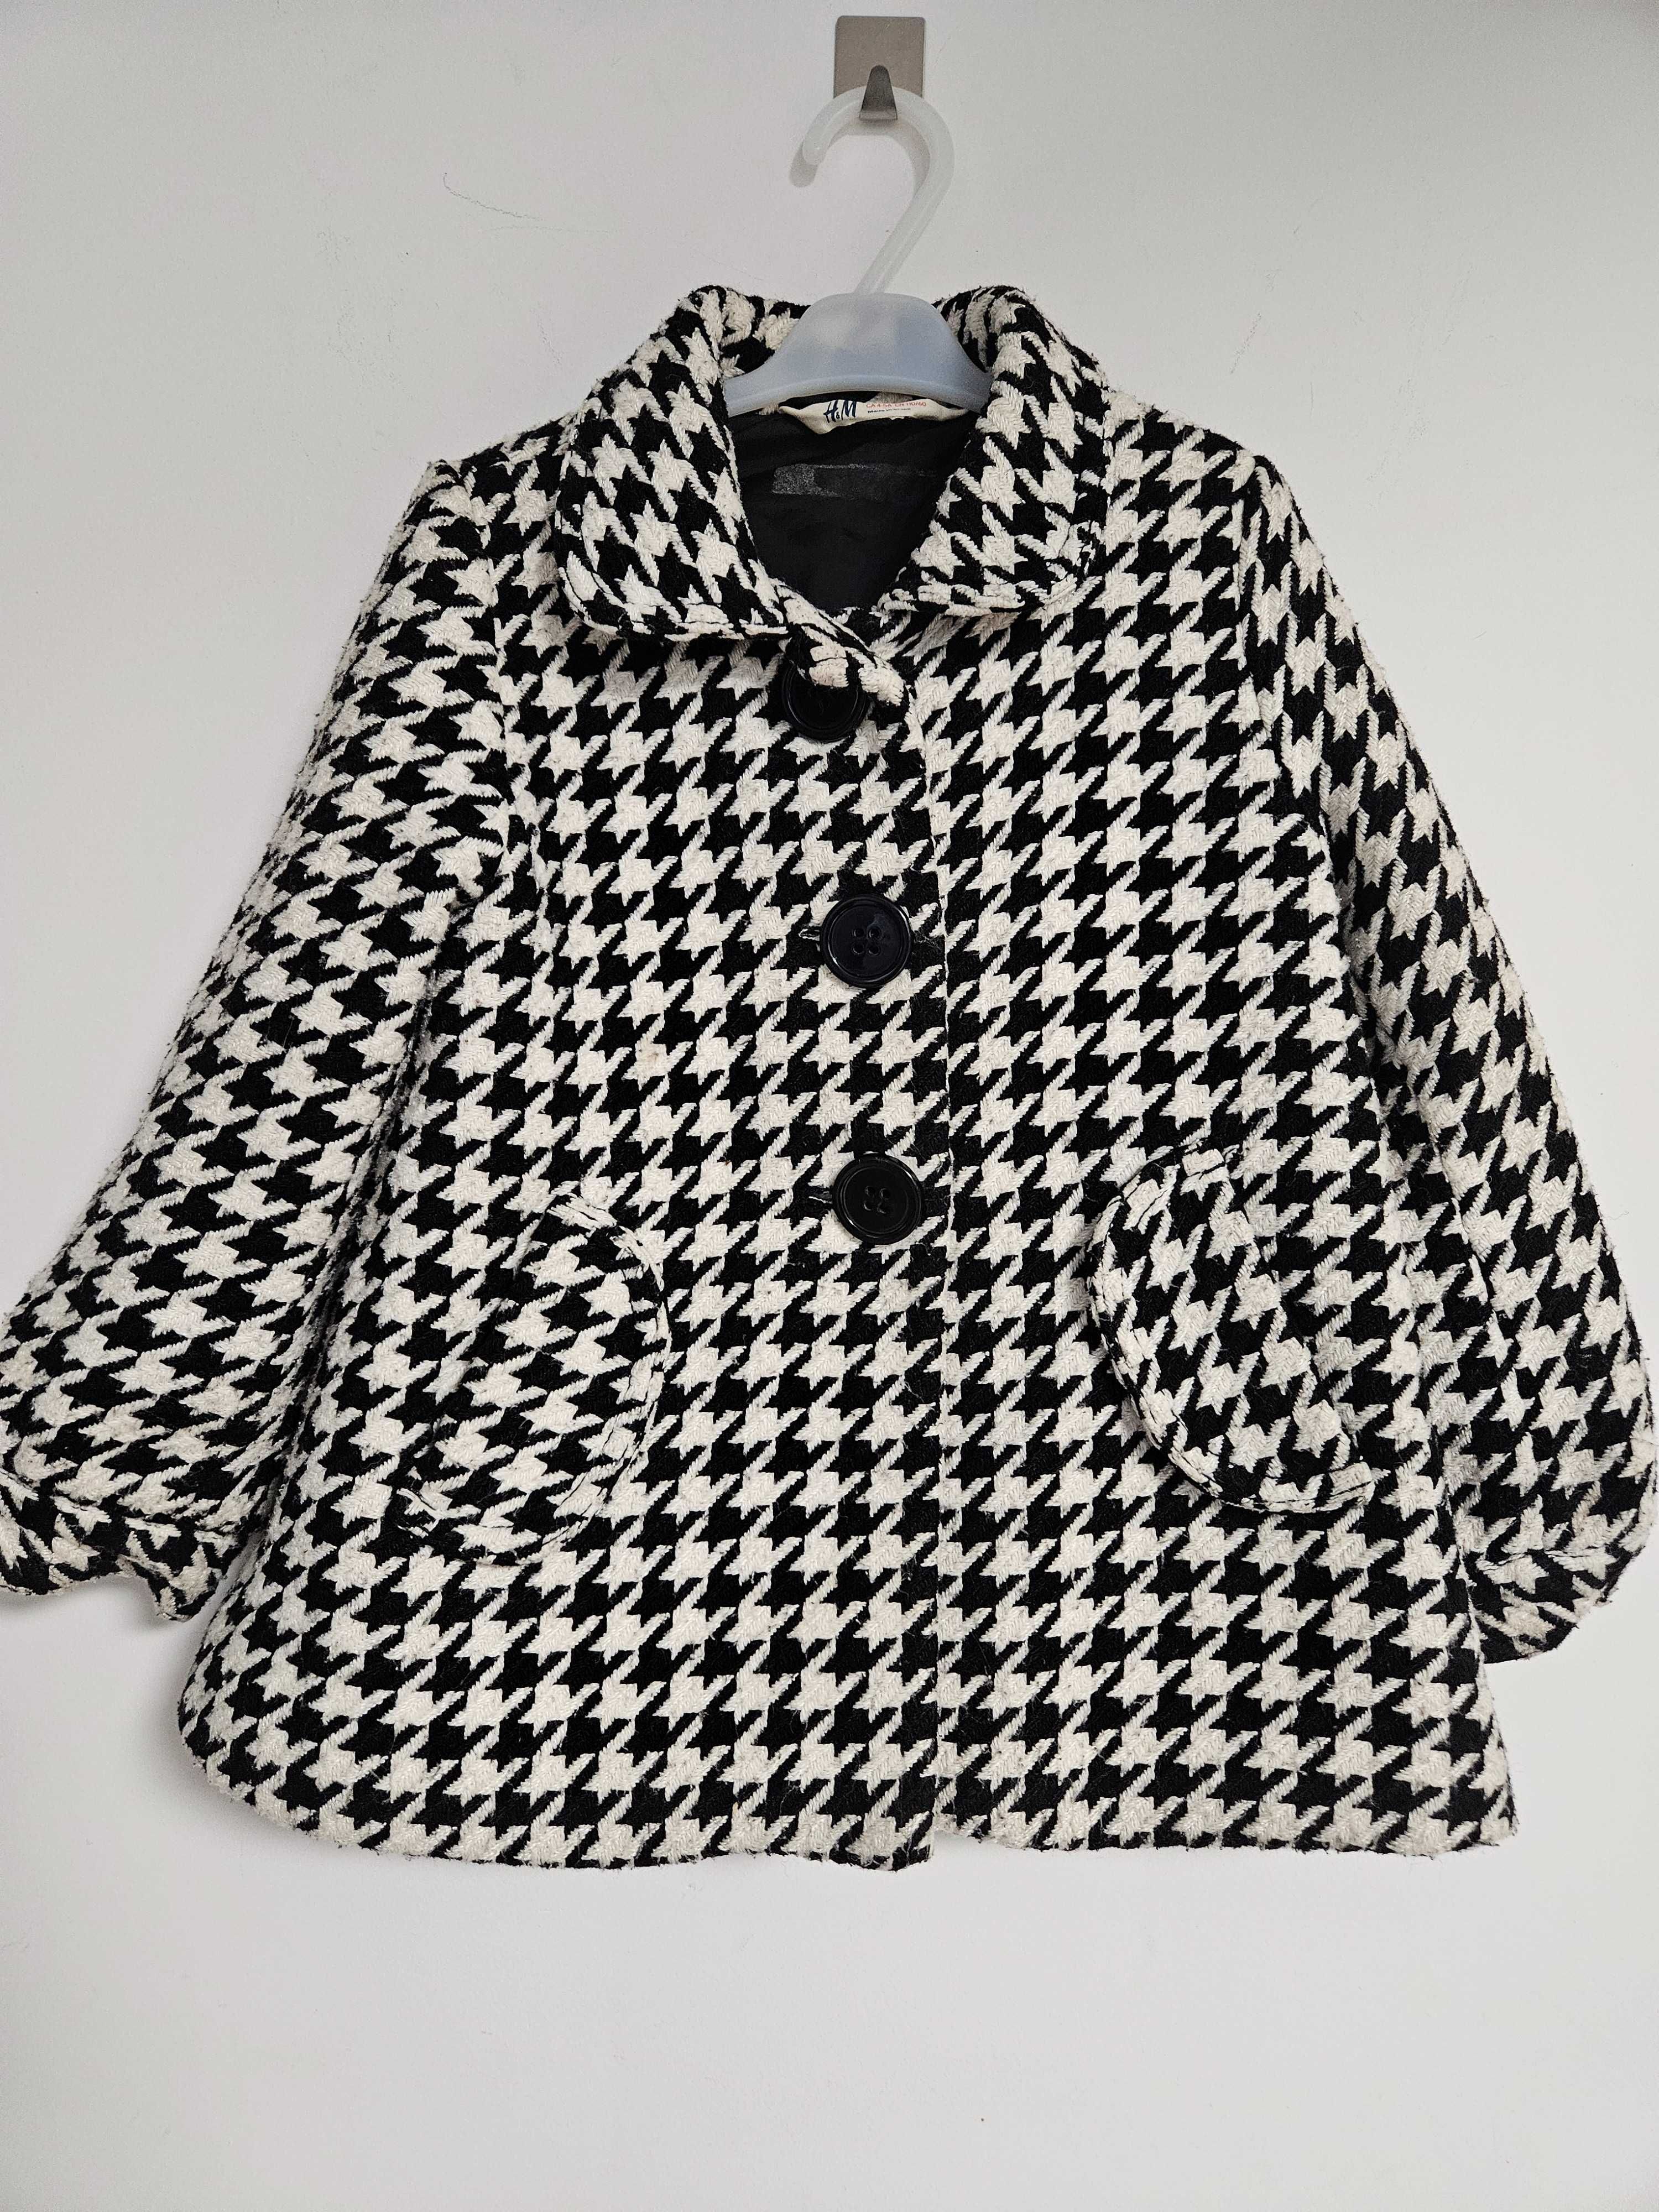 H&M plaszczyk kurtka rozmiar 104/110 w kartę